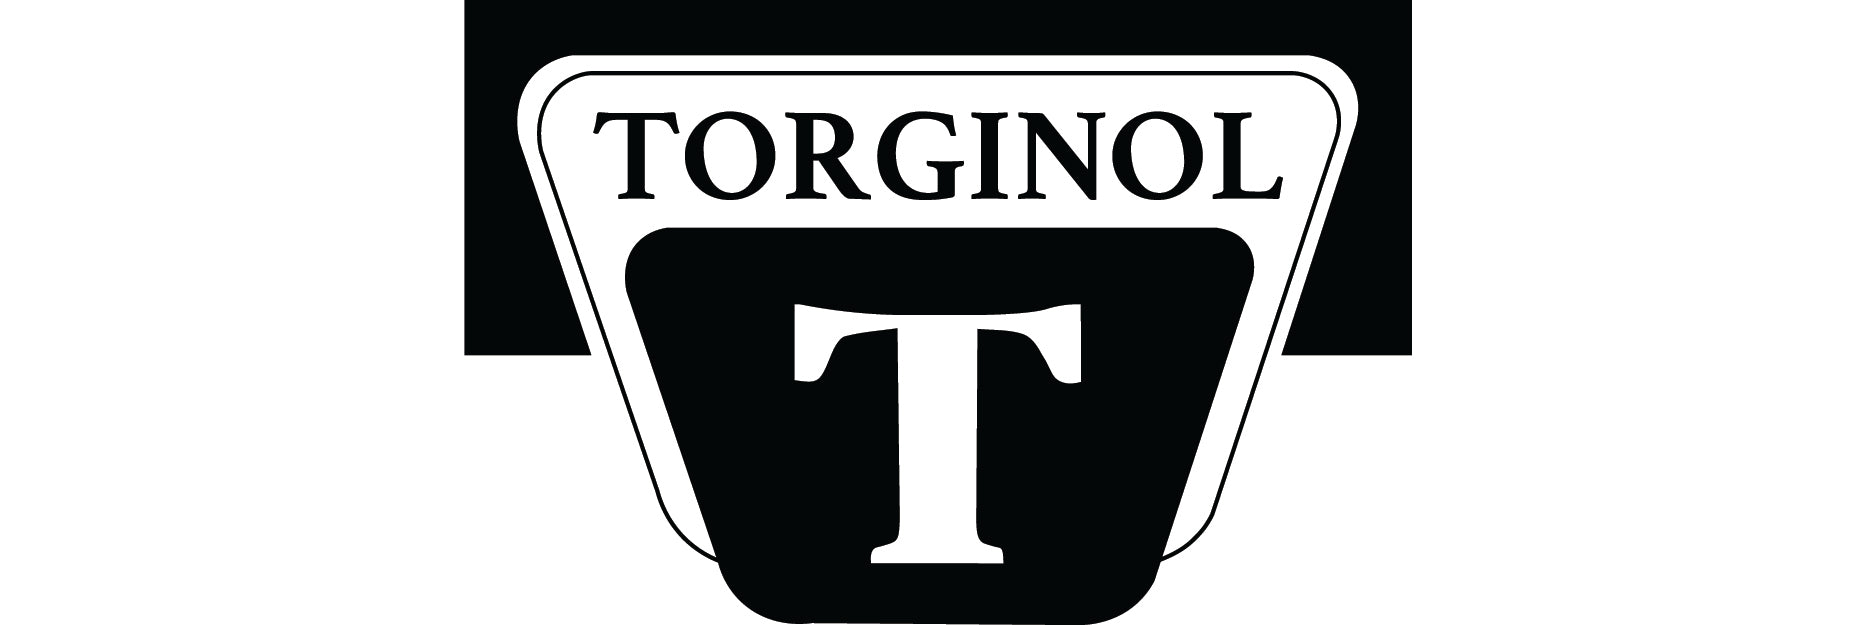 Torginol Brand Logo